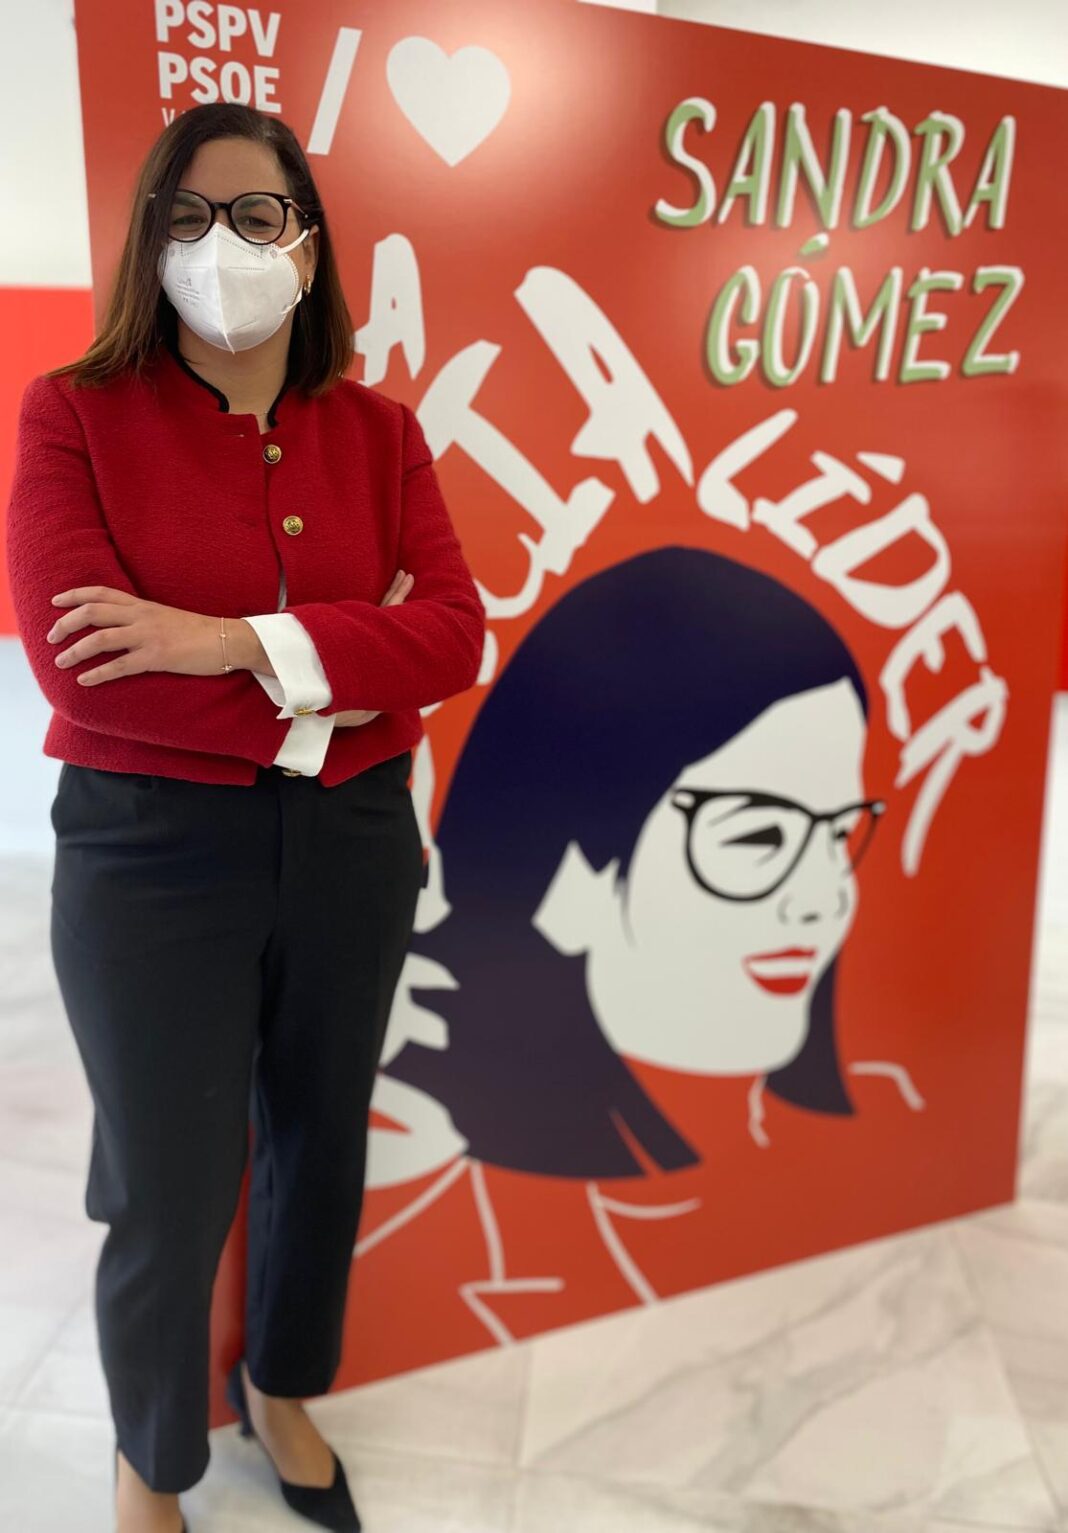 Sandra Gómez y su escasa democracia interna ignorando los Estatutos del PSPV y atacando los ideales socialistas